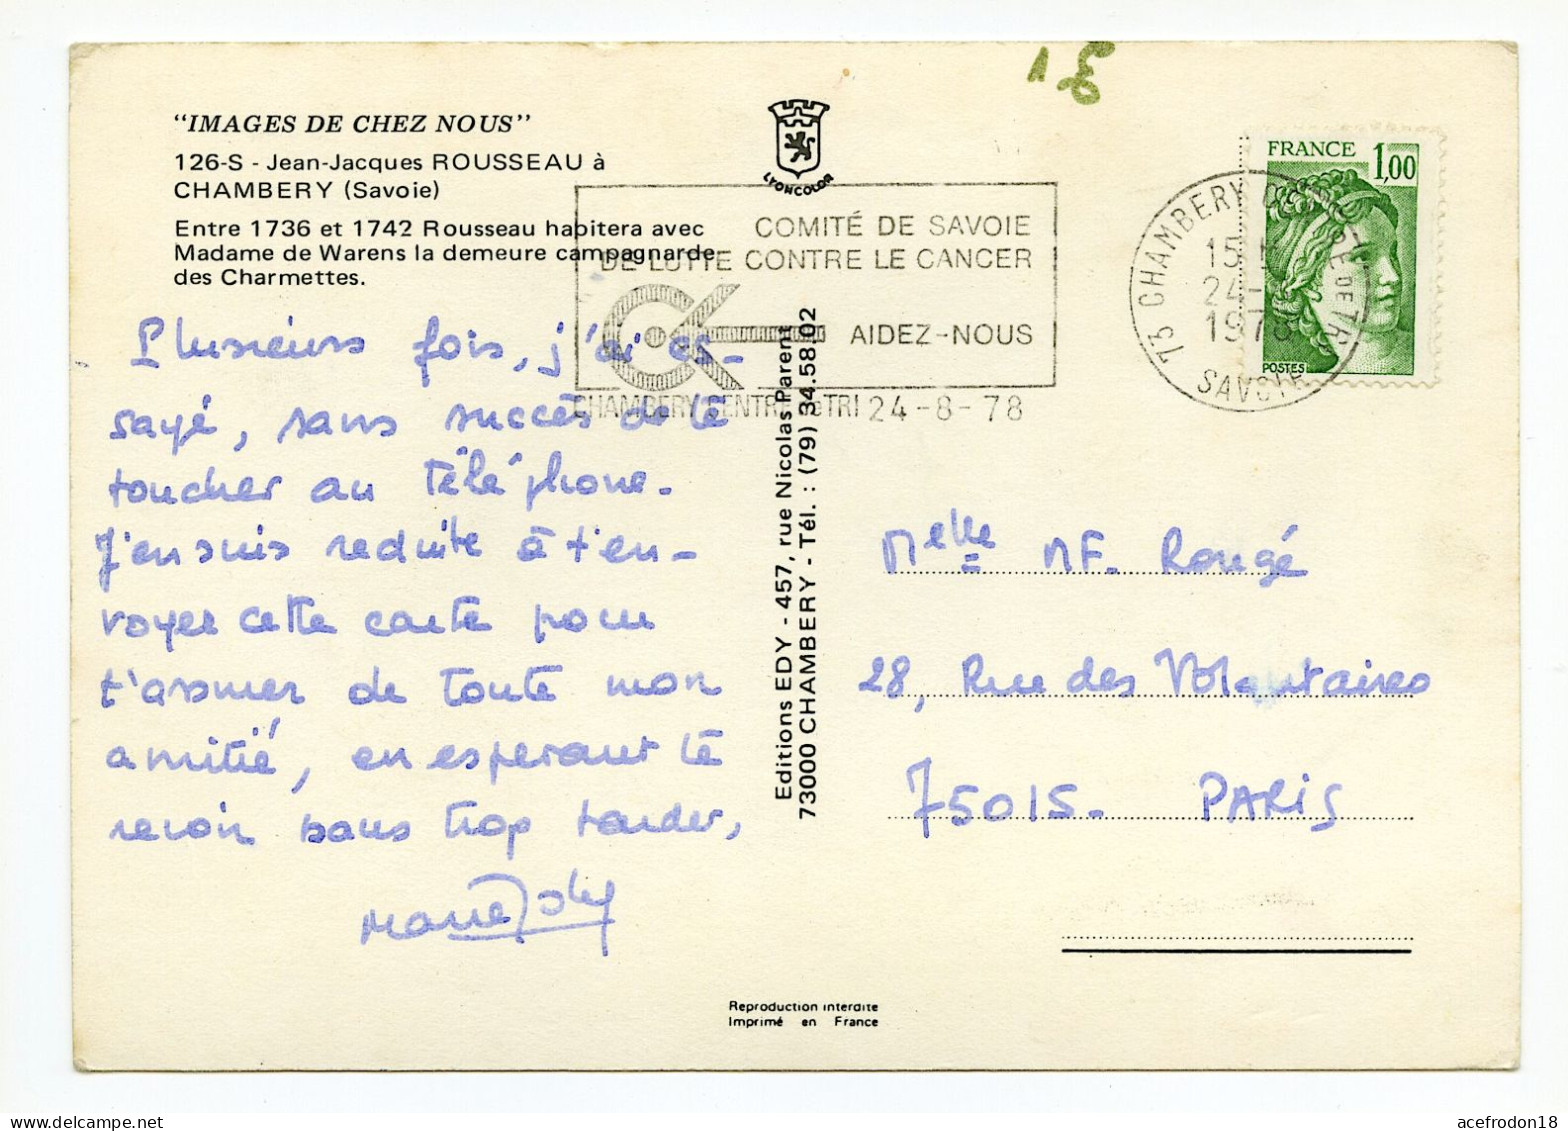 Jean-Jacques ROUSSEAU à CHAMBERY - Chambery